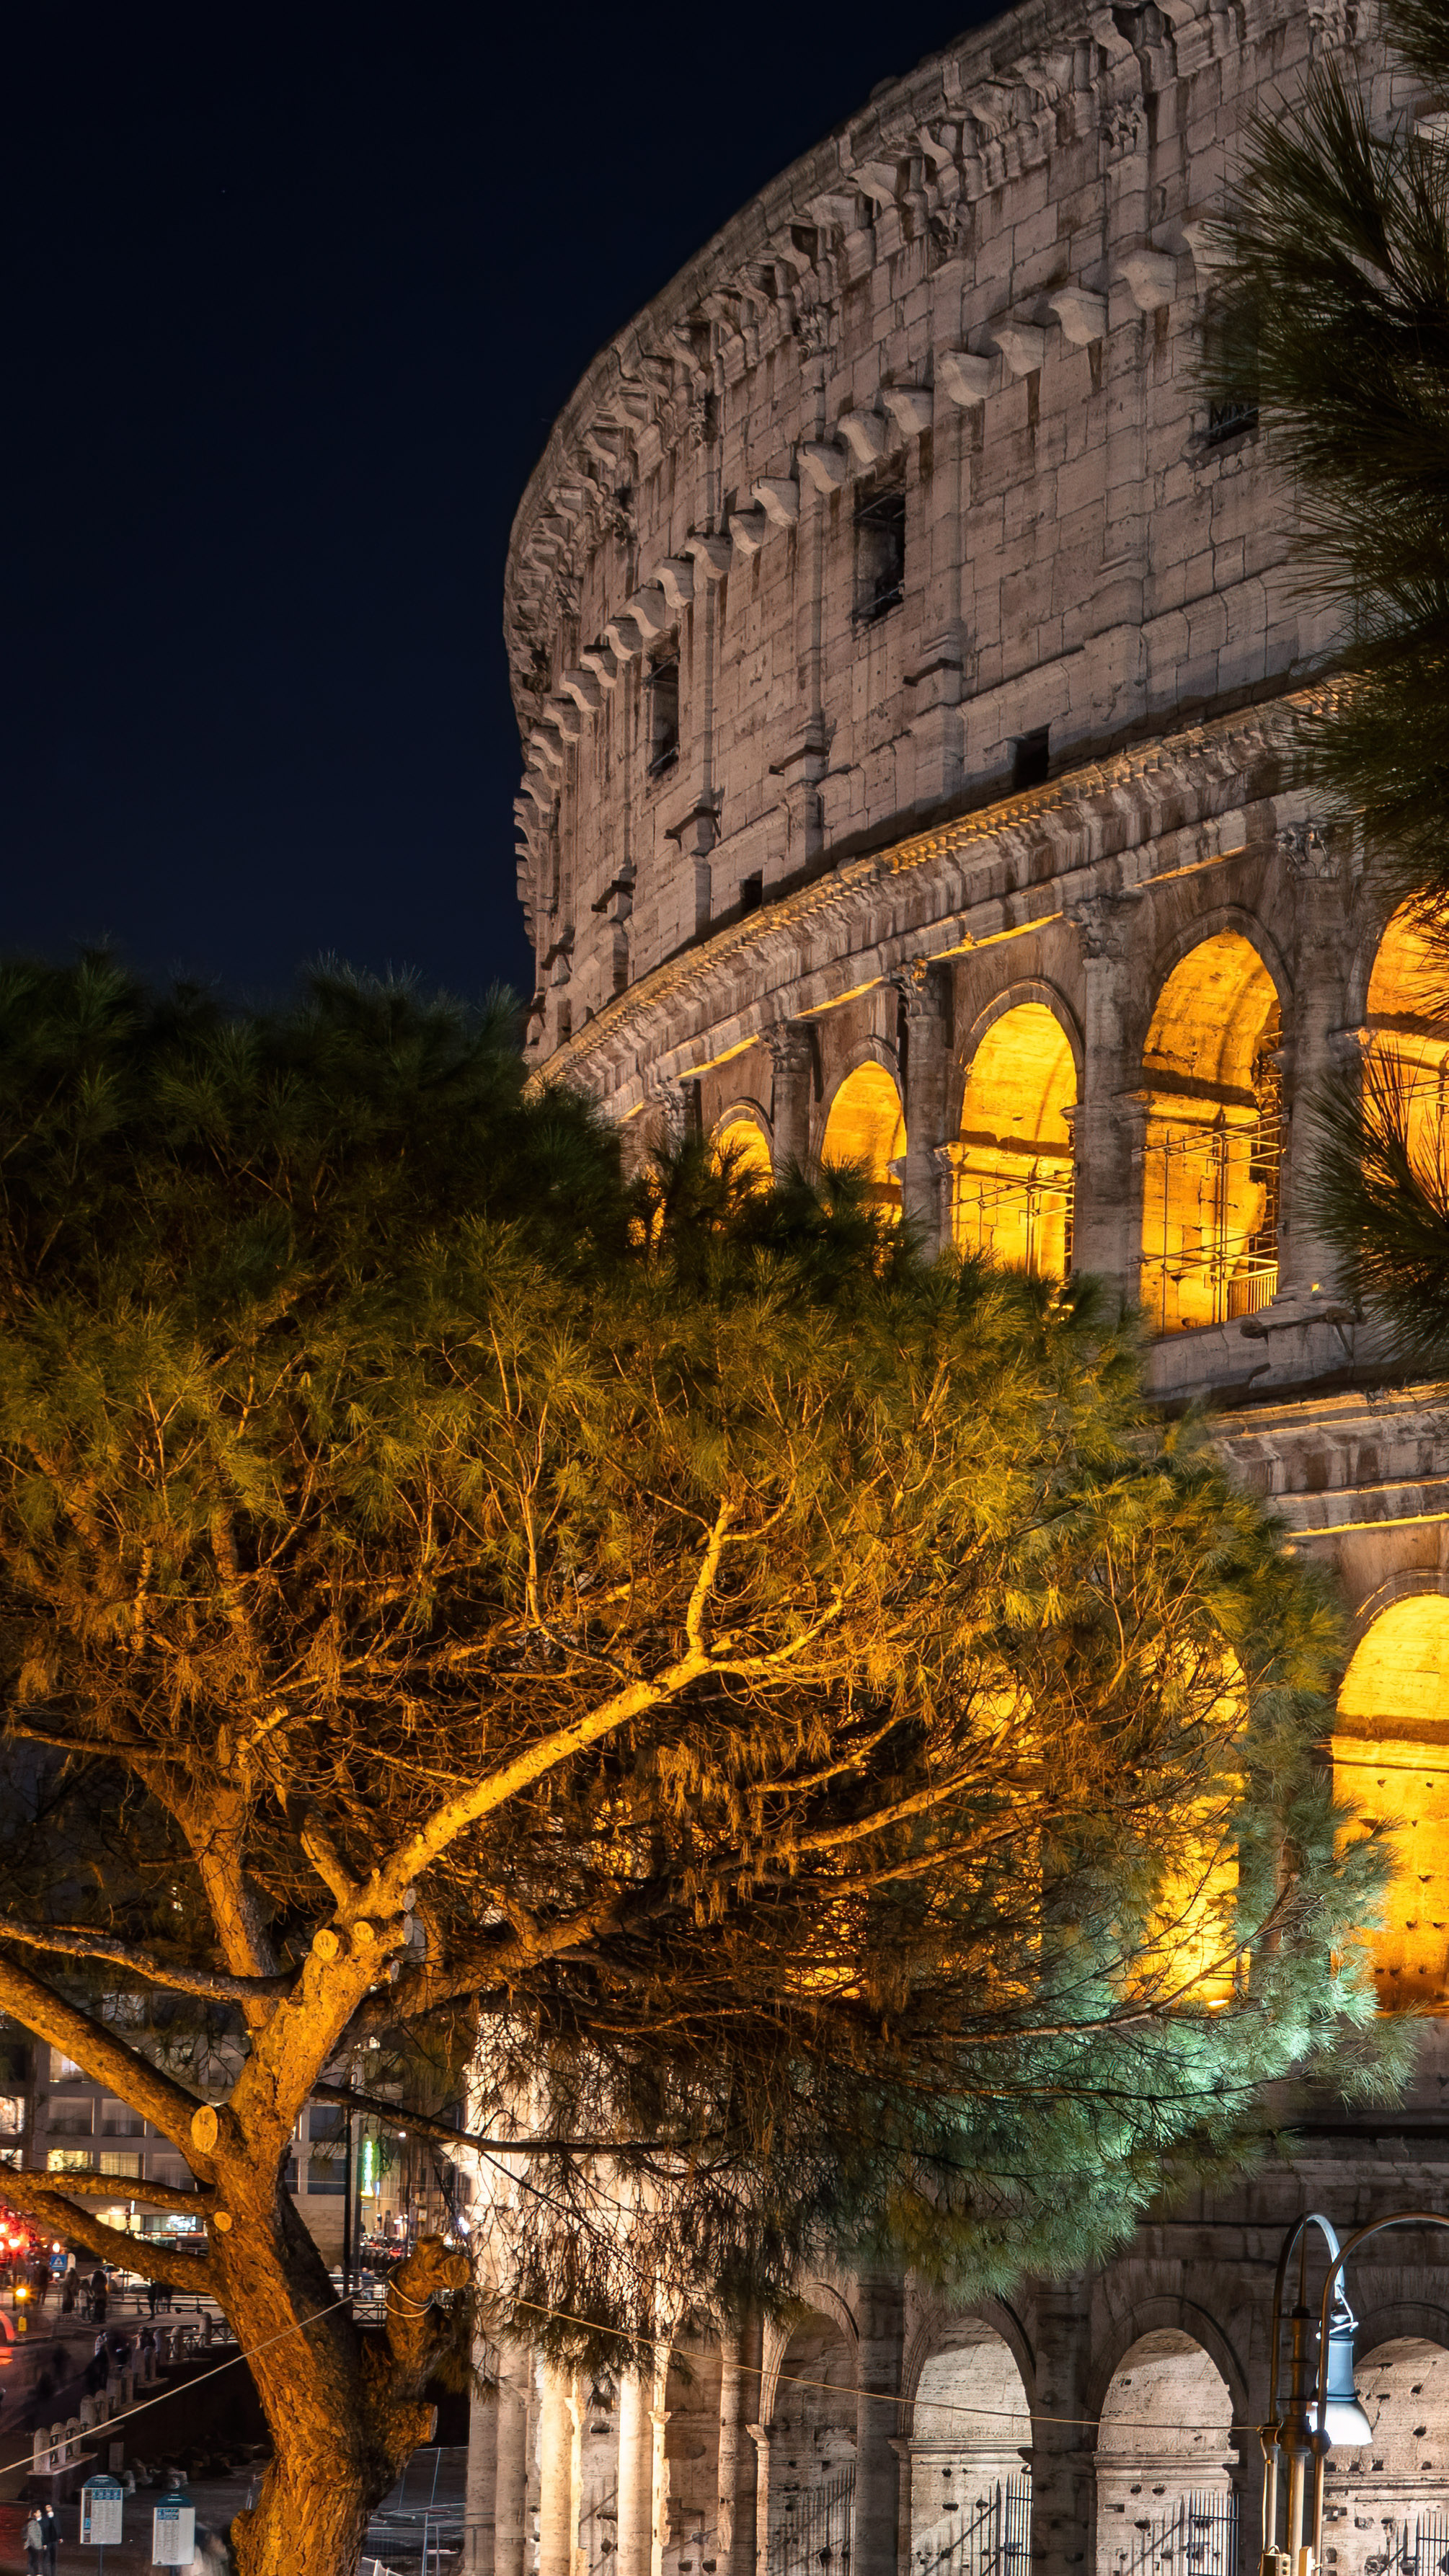 Voyagez au cœur de l’Italie avec notre fond d’écran nocturne mettant en vedette les lumières du Colisée de Rome, ajoutant une touche de grandeur historique à votre appareil.